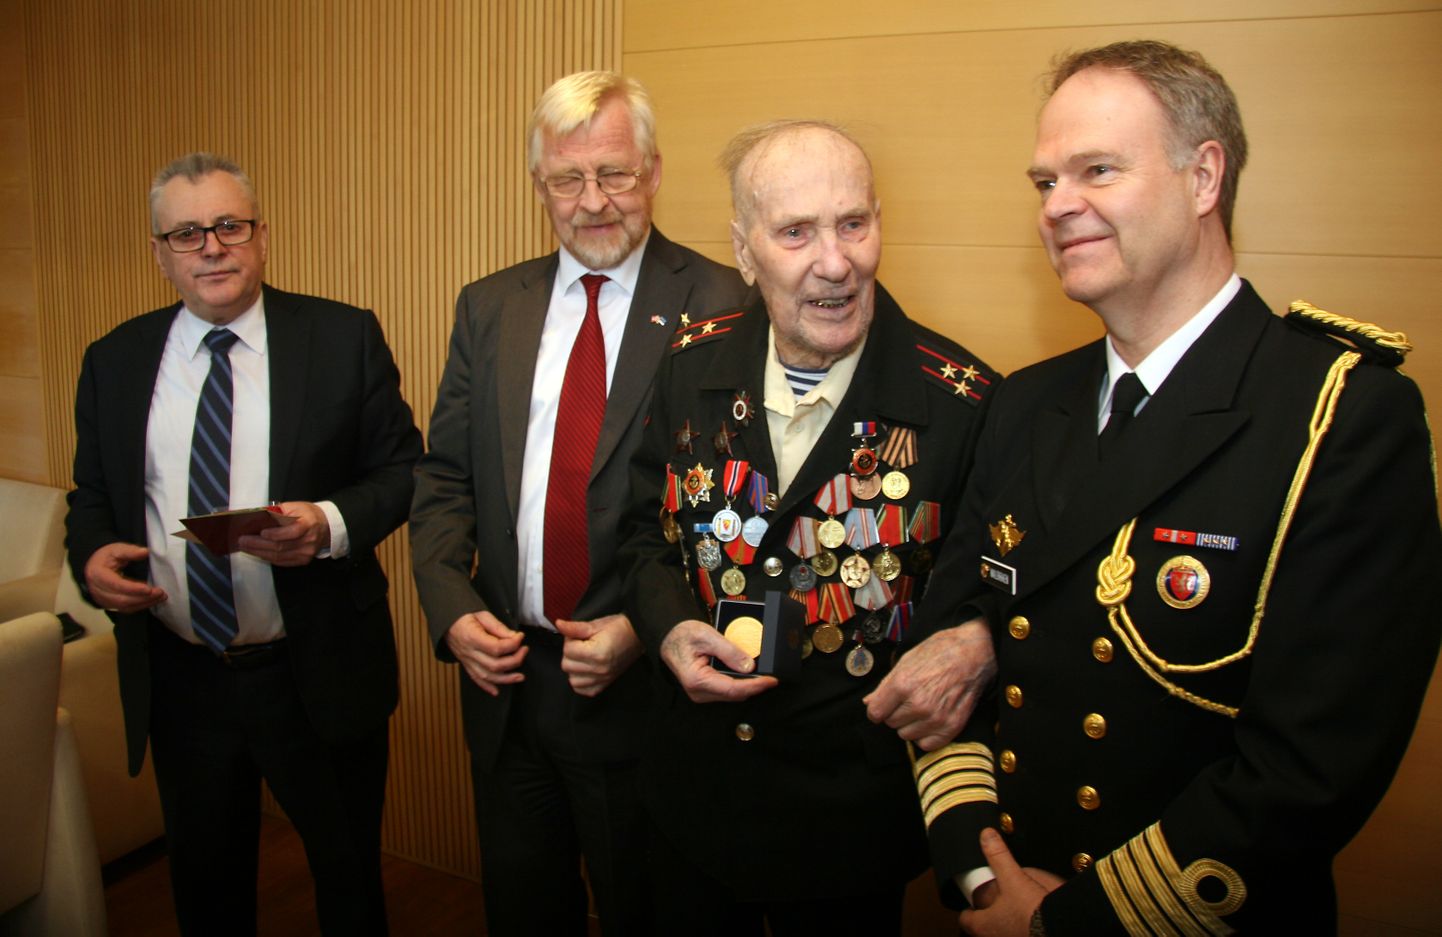 Представители норвежского и российского посольств в Эстонии вручили ветерану награды и выразили искреннее восхищение им.